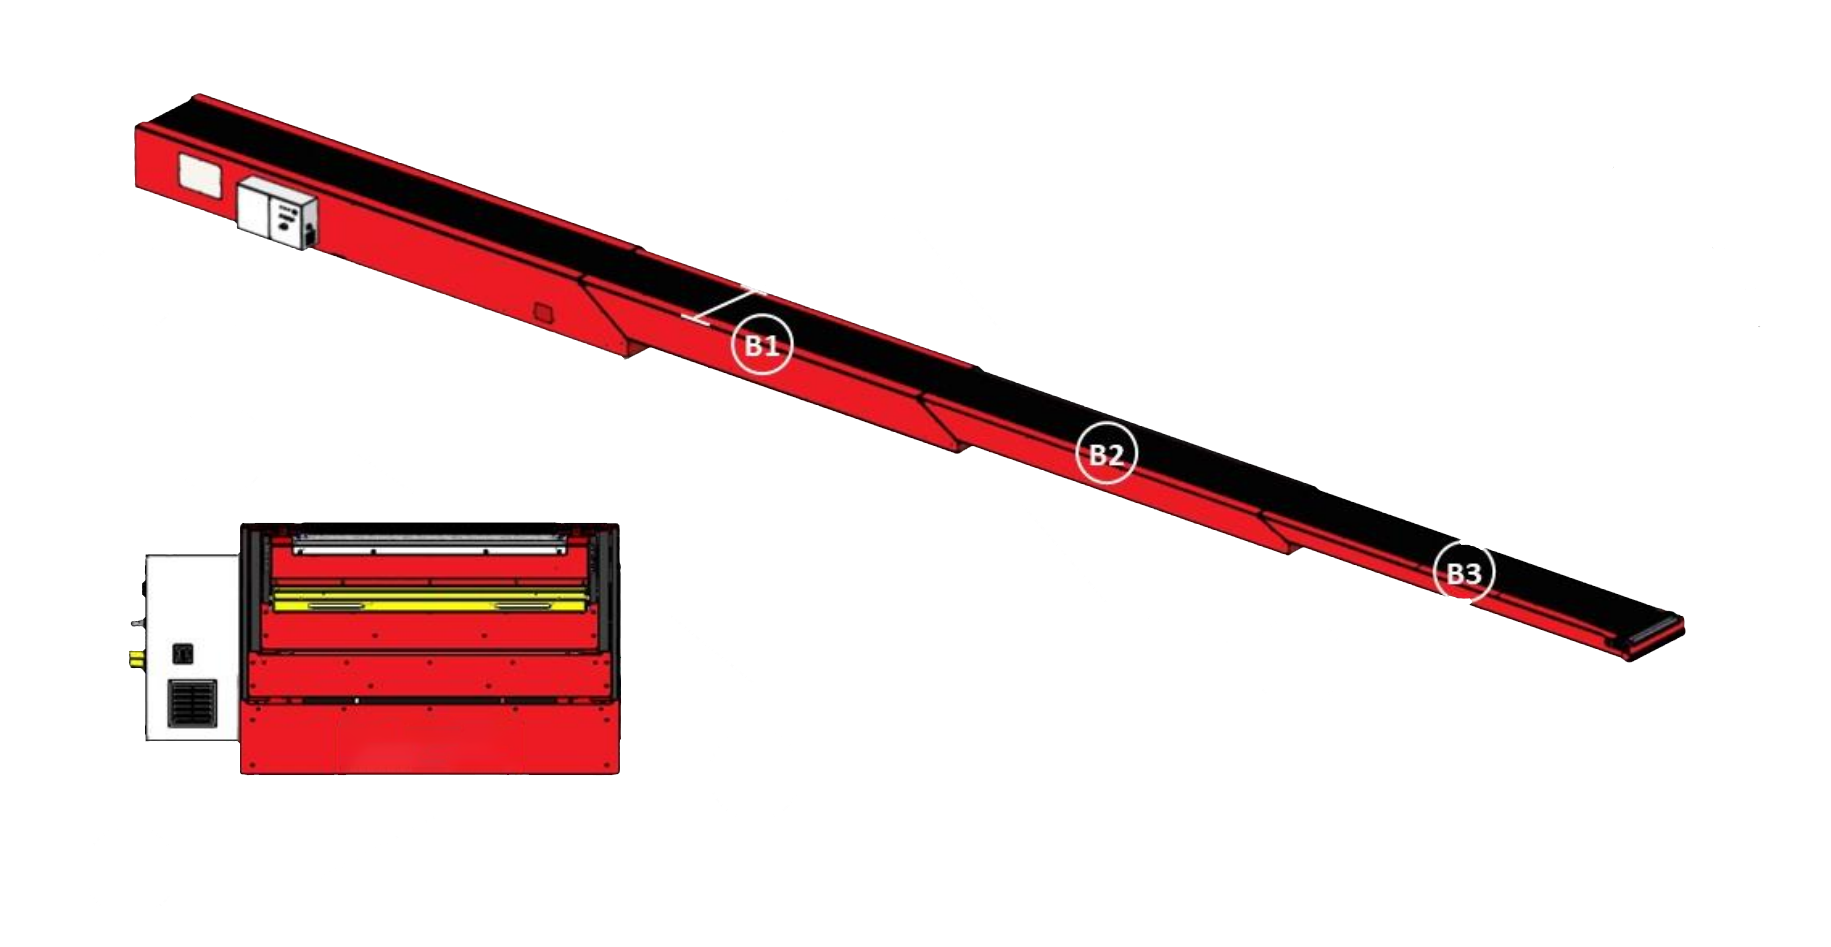 Telescopic conveyors key